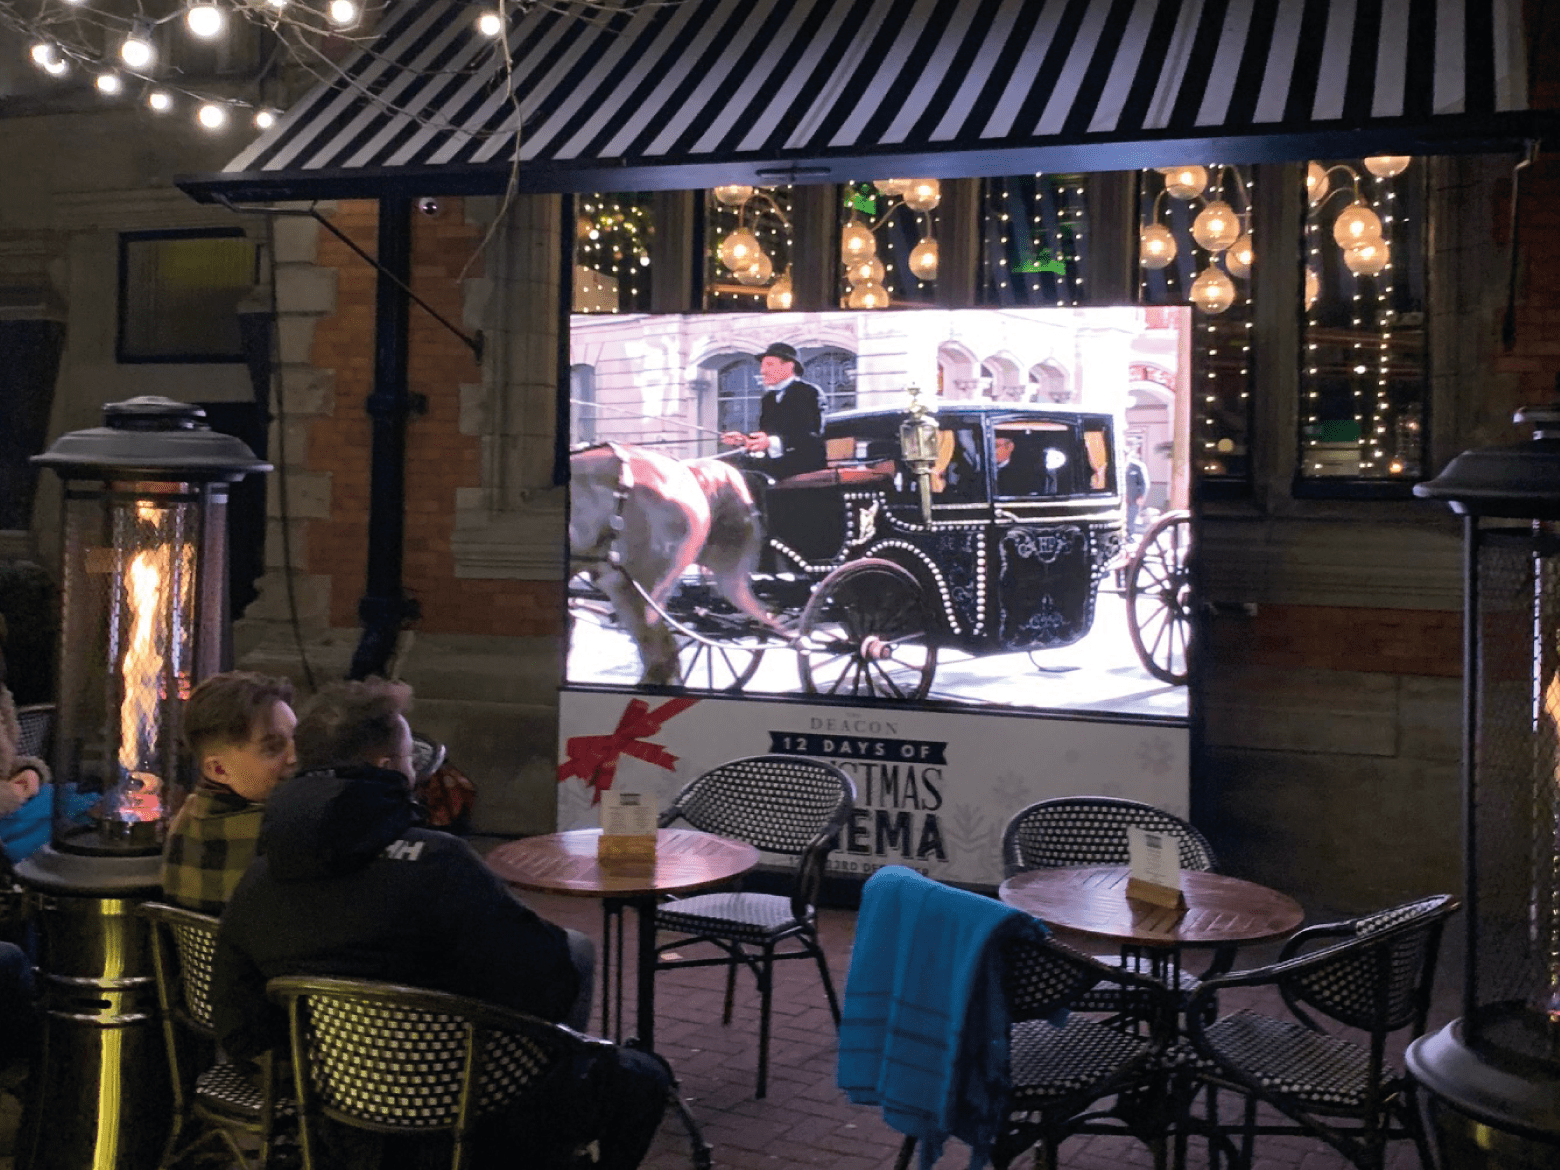 Outdoor Video Displays